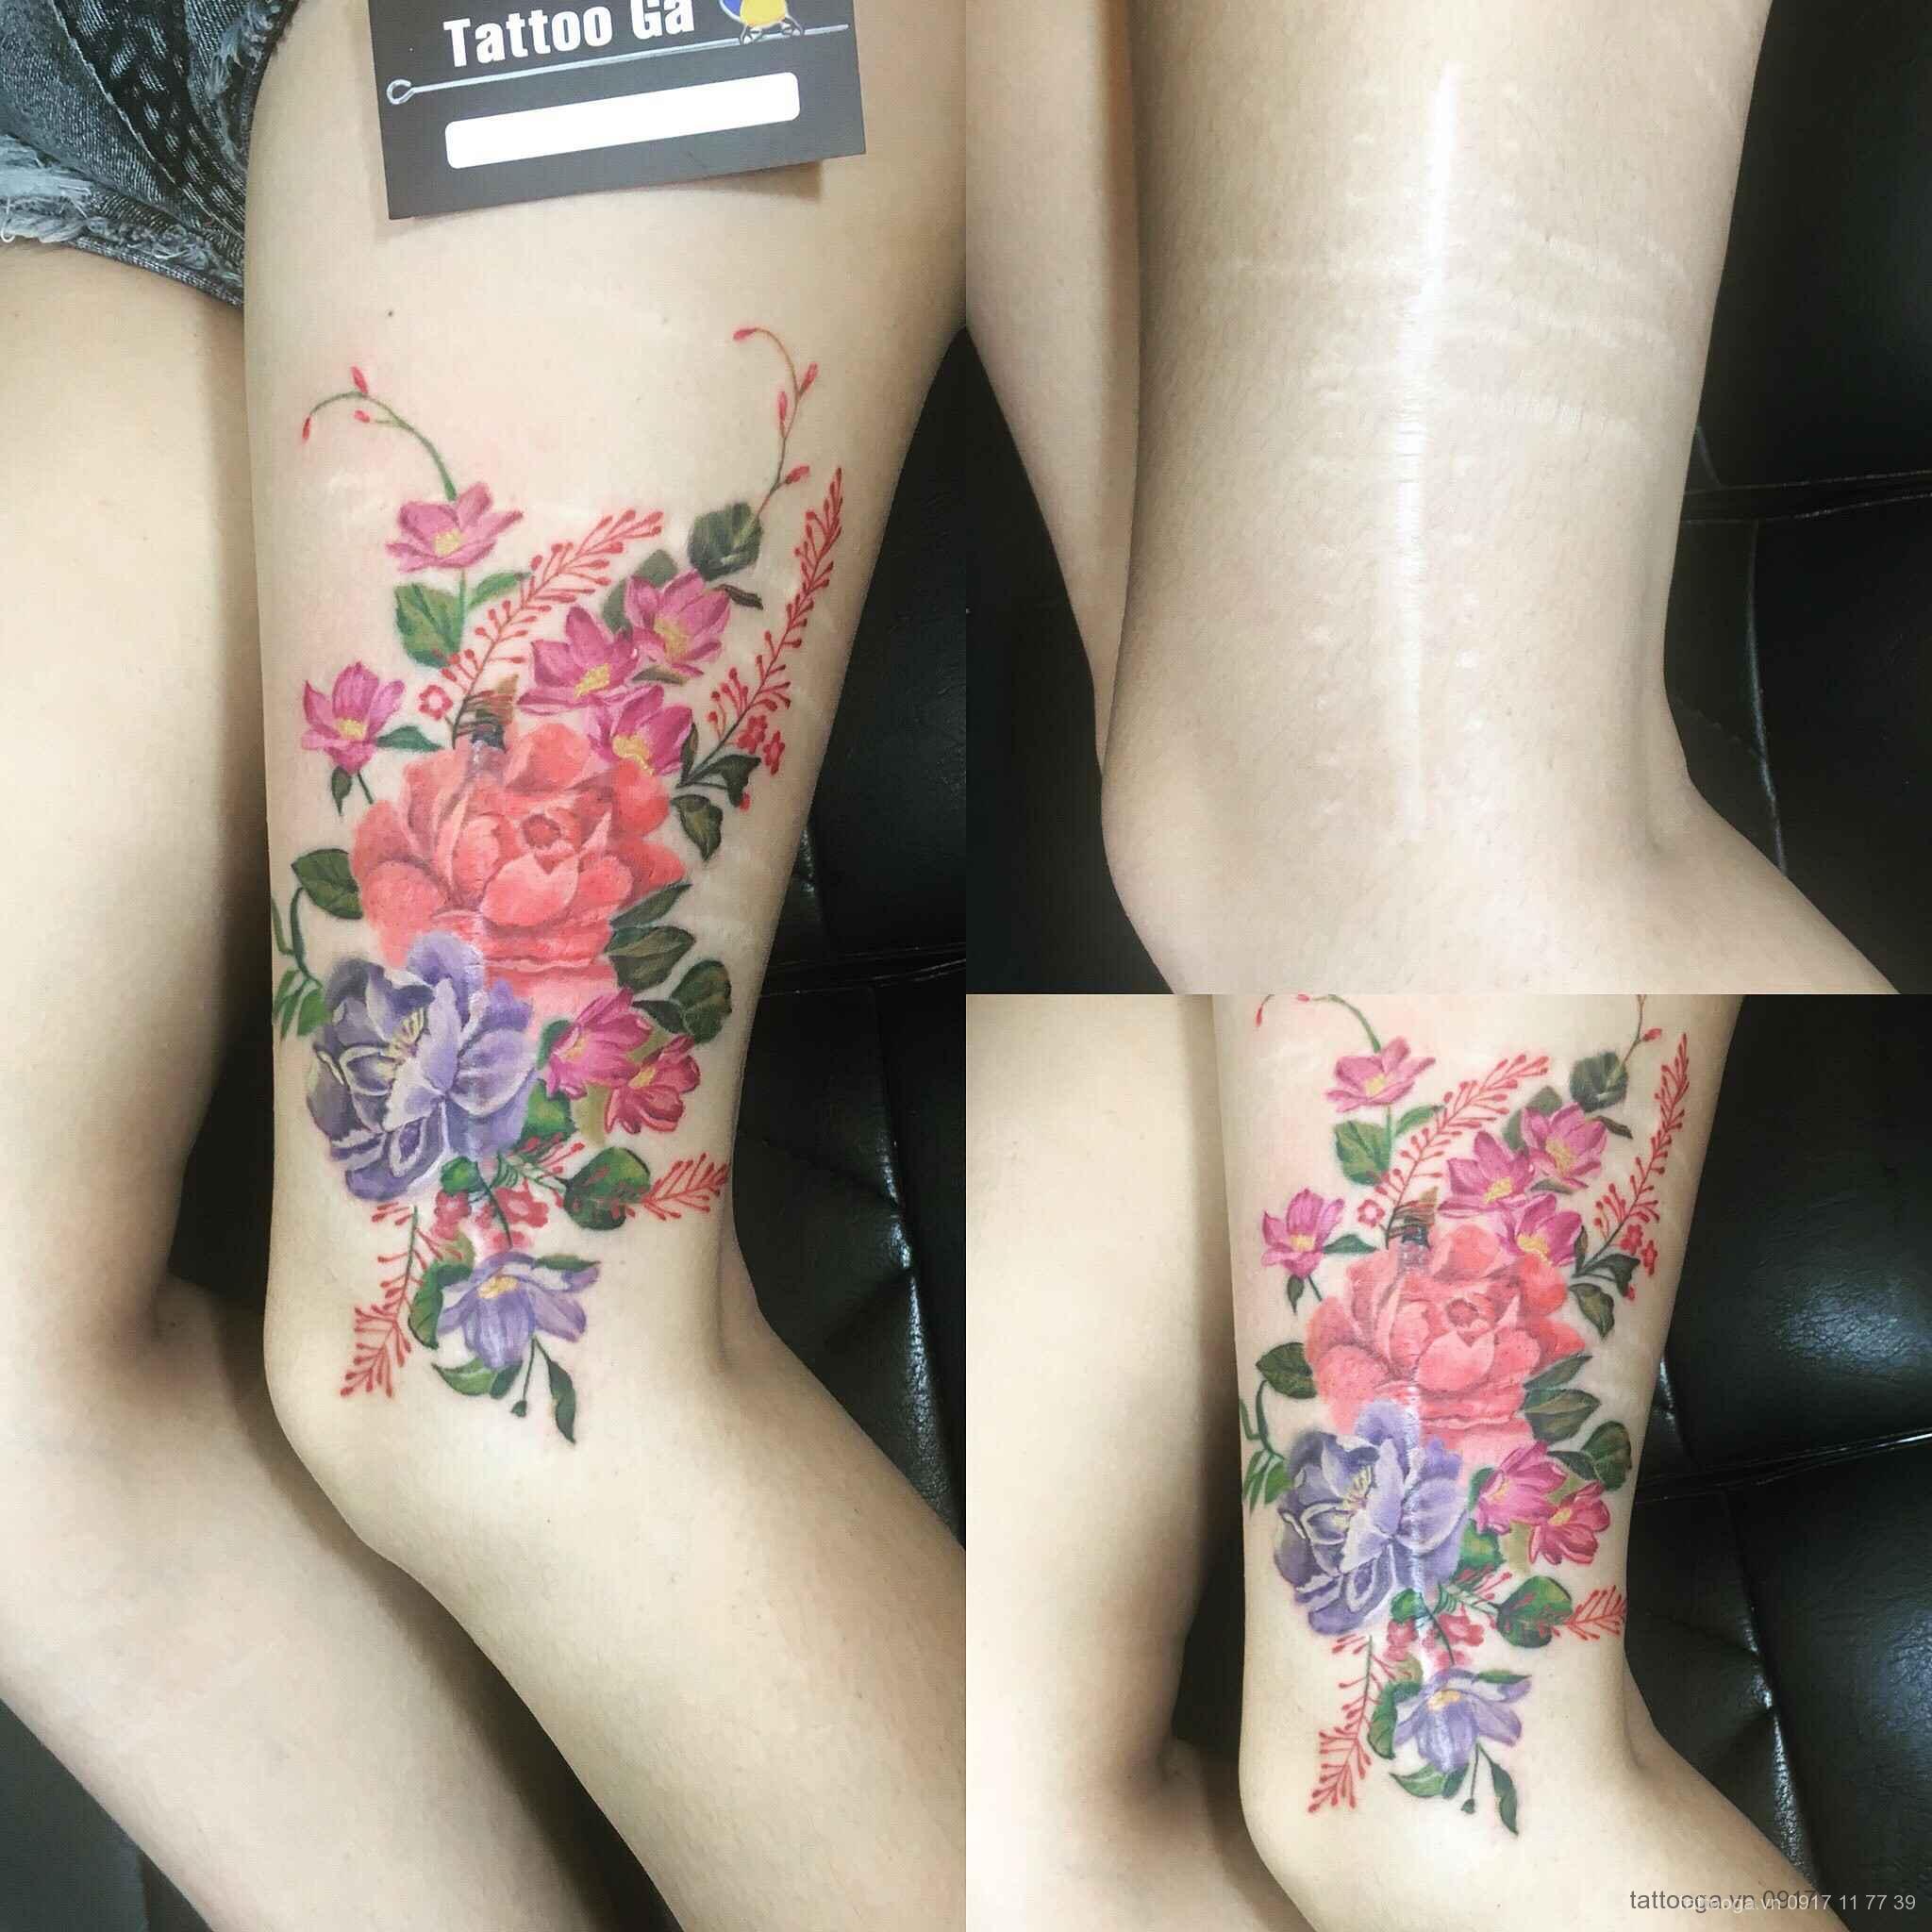 Hình xăm hoa là một trong những loại tattoo được yêu thích nhất bởi vẻ đẹp của những đóa hoa tươi tắn trên da. Hãy cùng ngắm nhìn những hình xăm hoa đẹp mắt trong ảnh để cảm nhận sự tao nhã và độc đáo của nó.